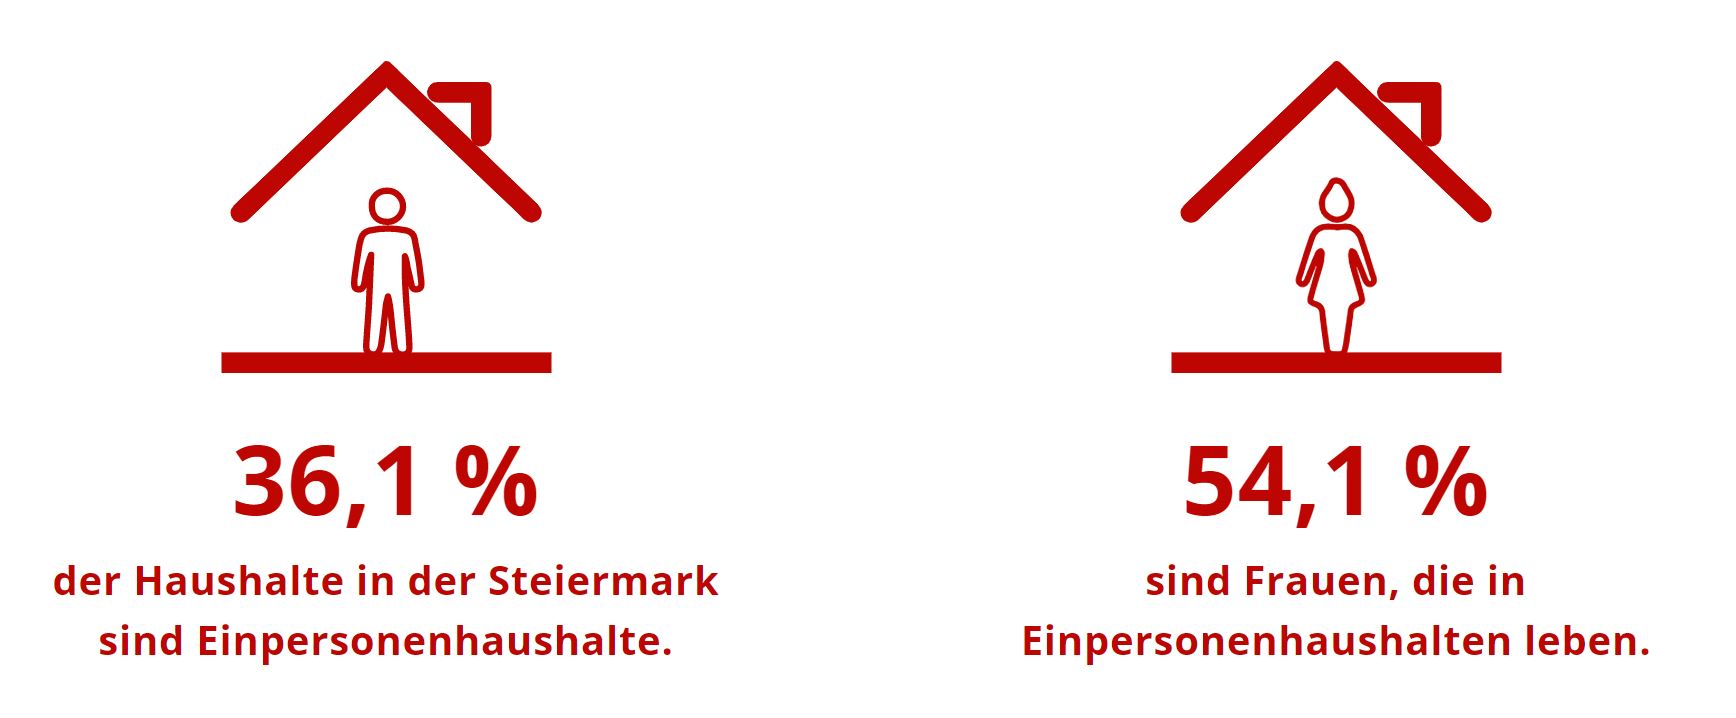 Gesundheit Steiermark: 36,1 Prozent der Haushalte in der Steiermark sind Ein-Personen-Haushalte. 54,1 Prozent sind Frauen, die in Ein-Personen-Haushalten leben.